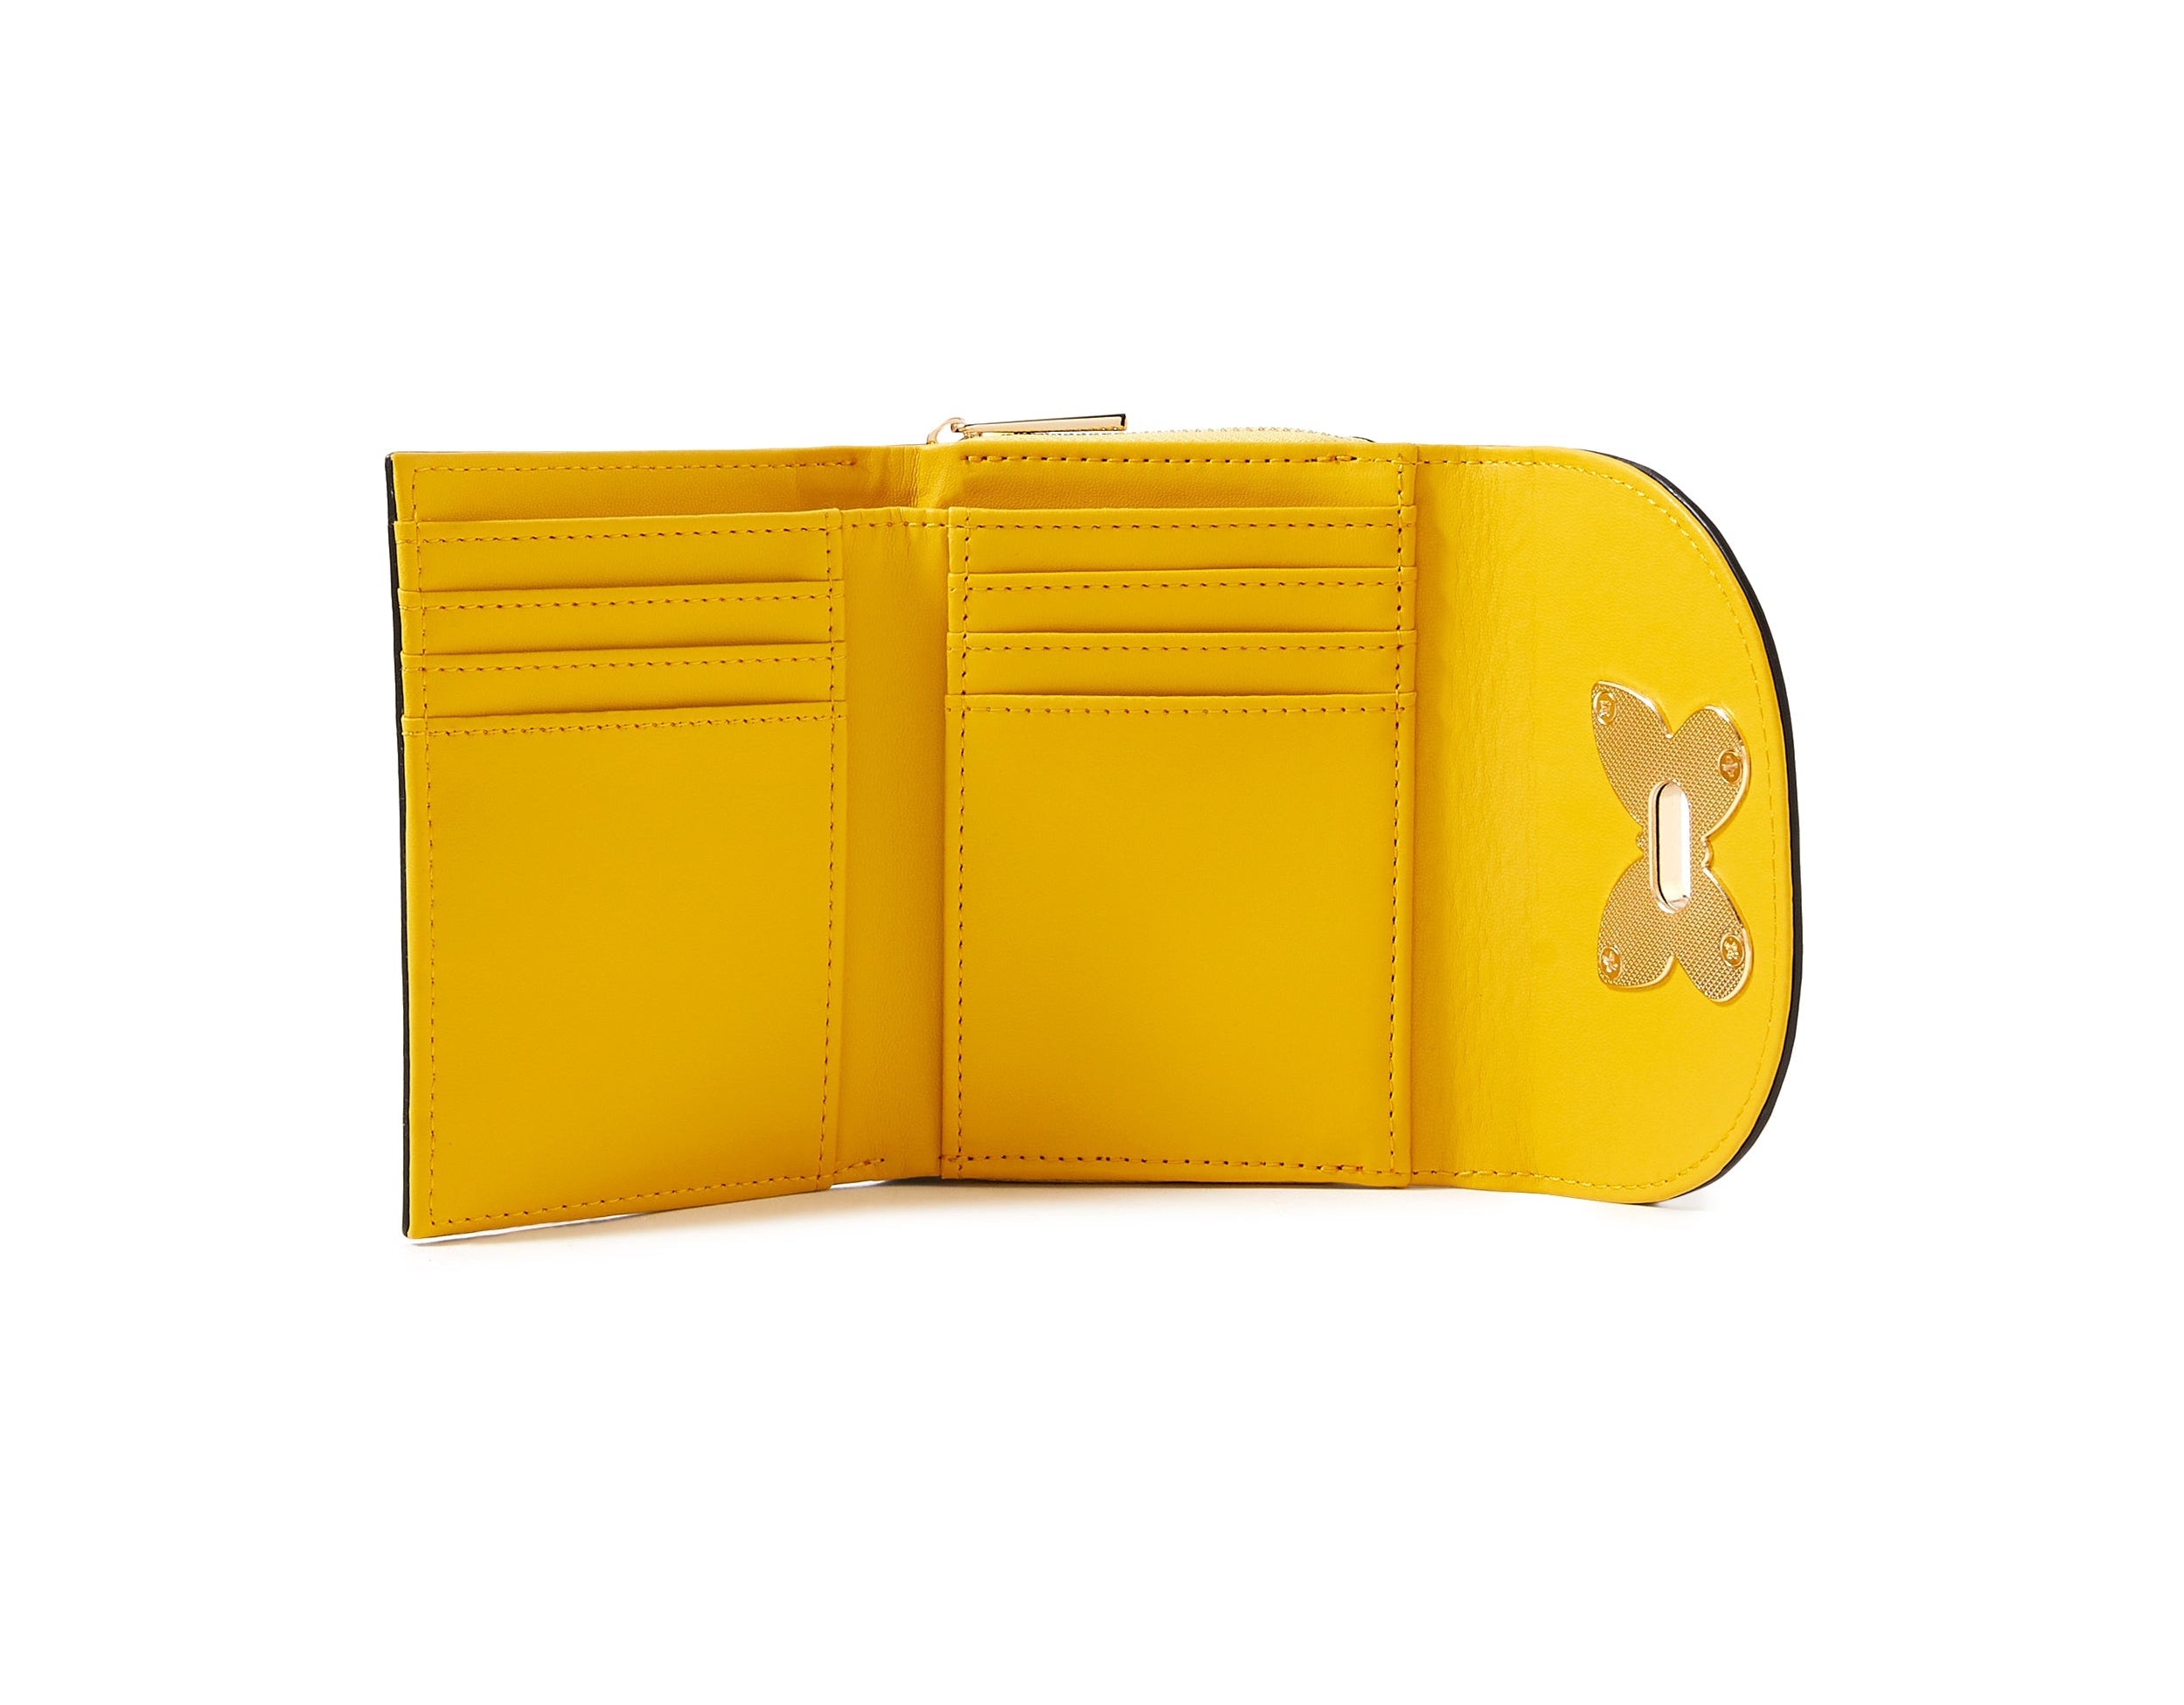 Accessorize London Women's Faux Leather Yellow Butterfly Wallet Purse